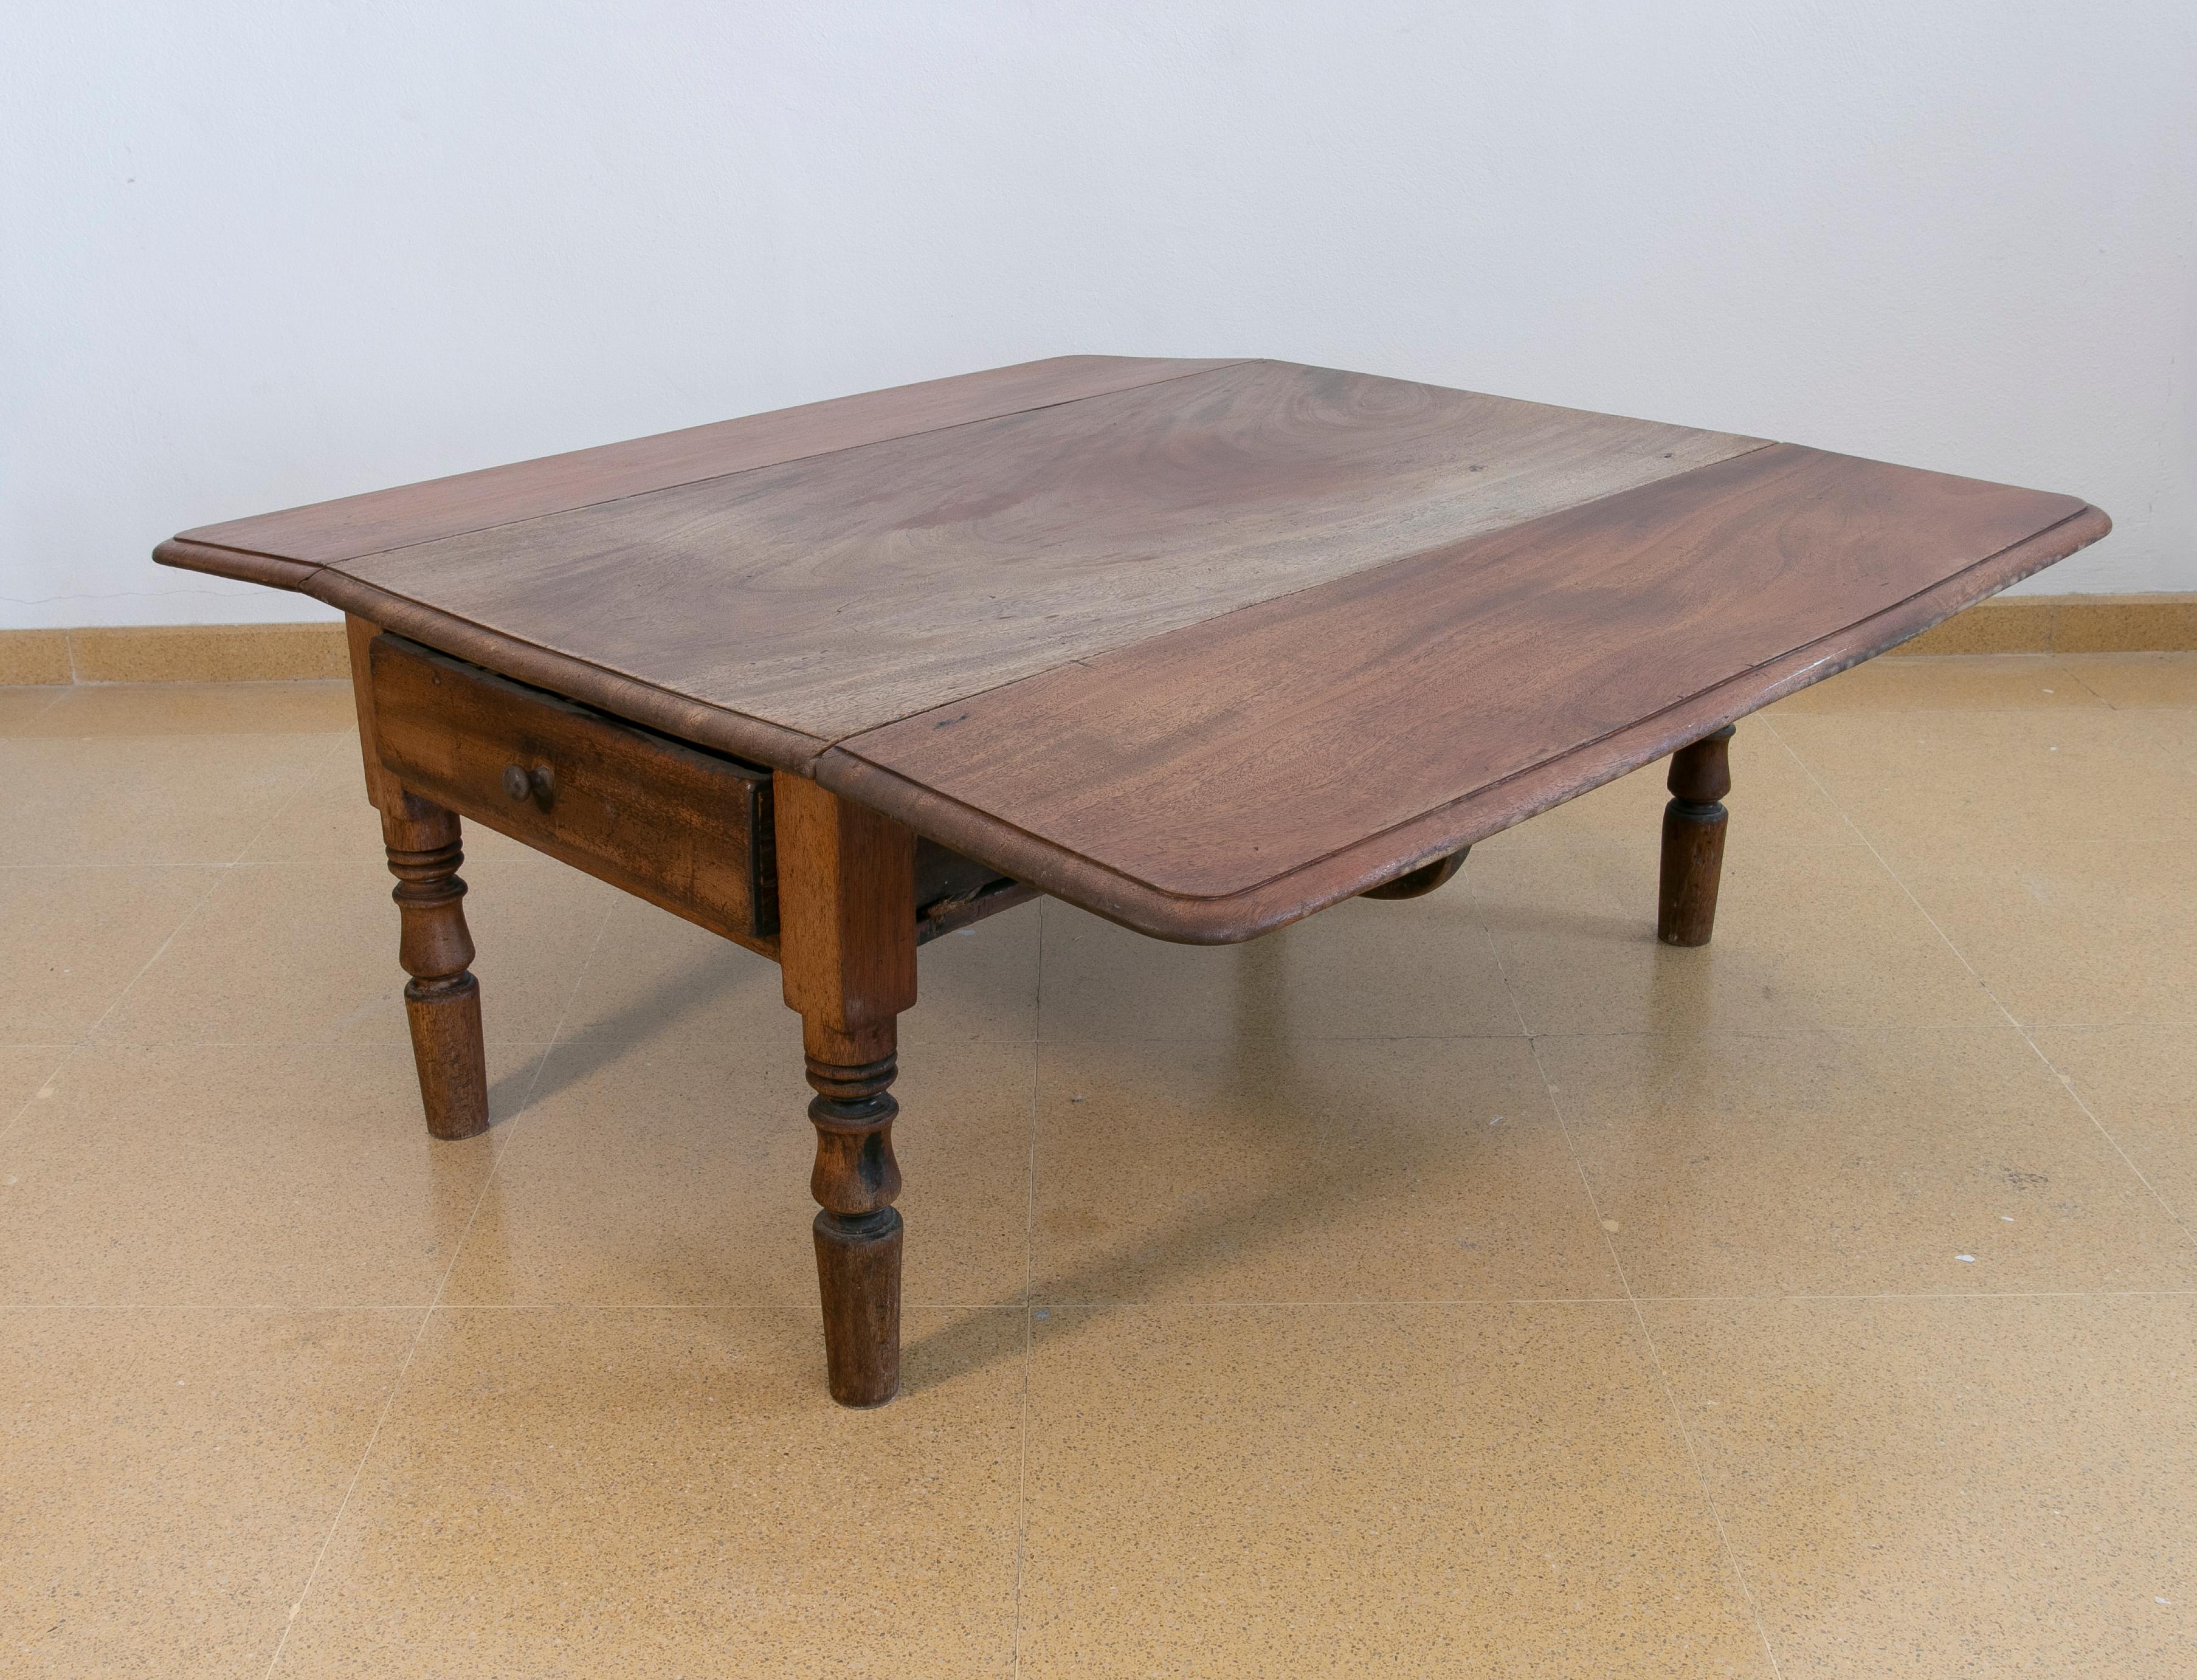 Table basse ailée en bois avec tiroirs sur le côté
Les dimensions de la table ouverte sont : 45x106x113cm.